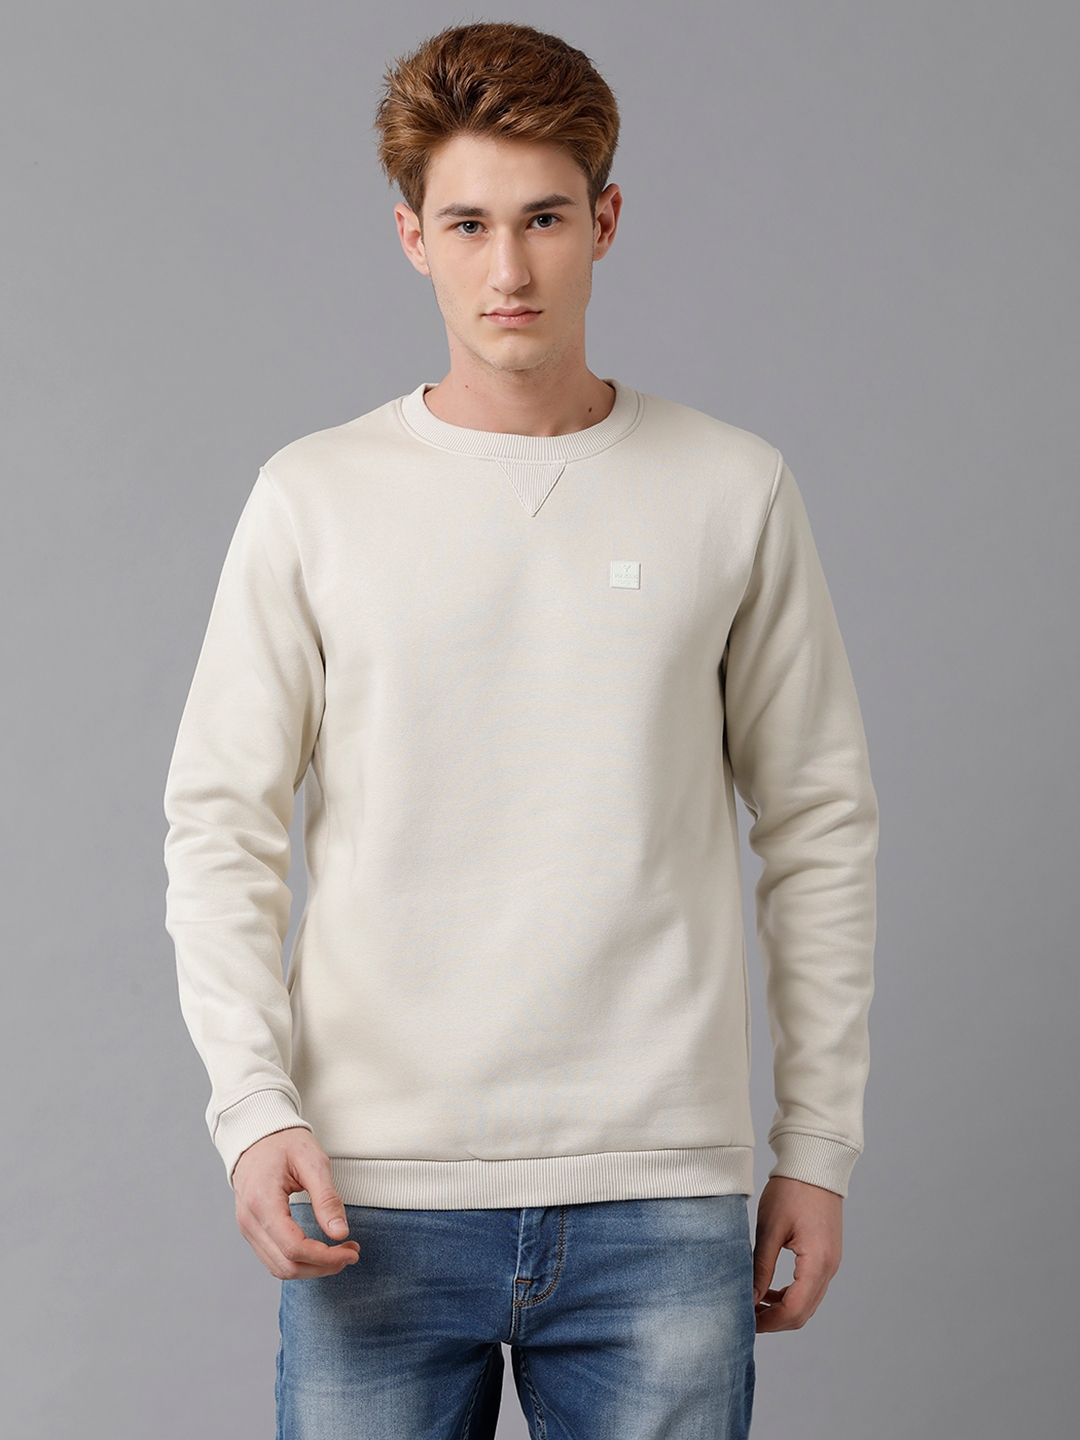 VOI Jeans Men's Solid Khaki Brushed Fleece Regular Fit Sweatshirt